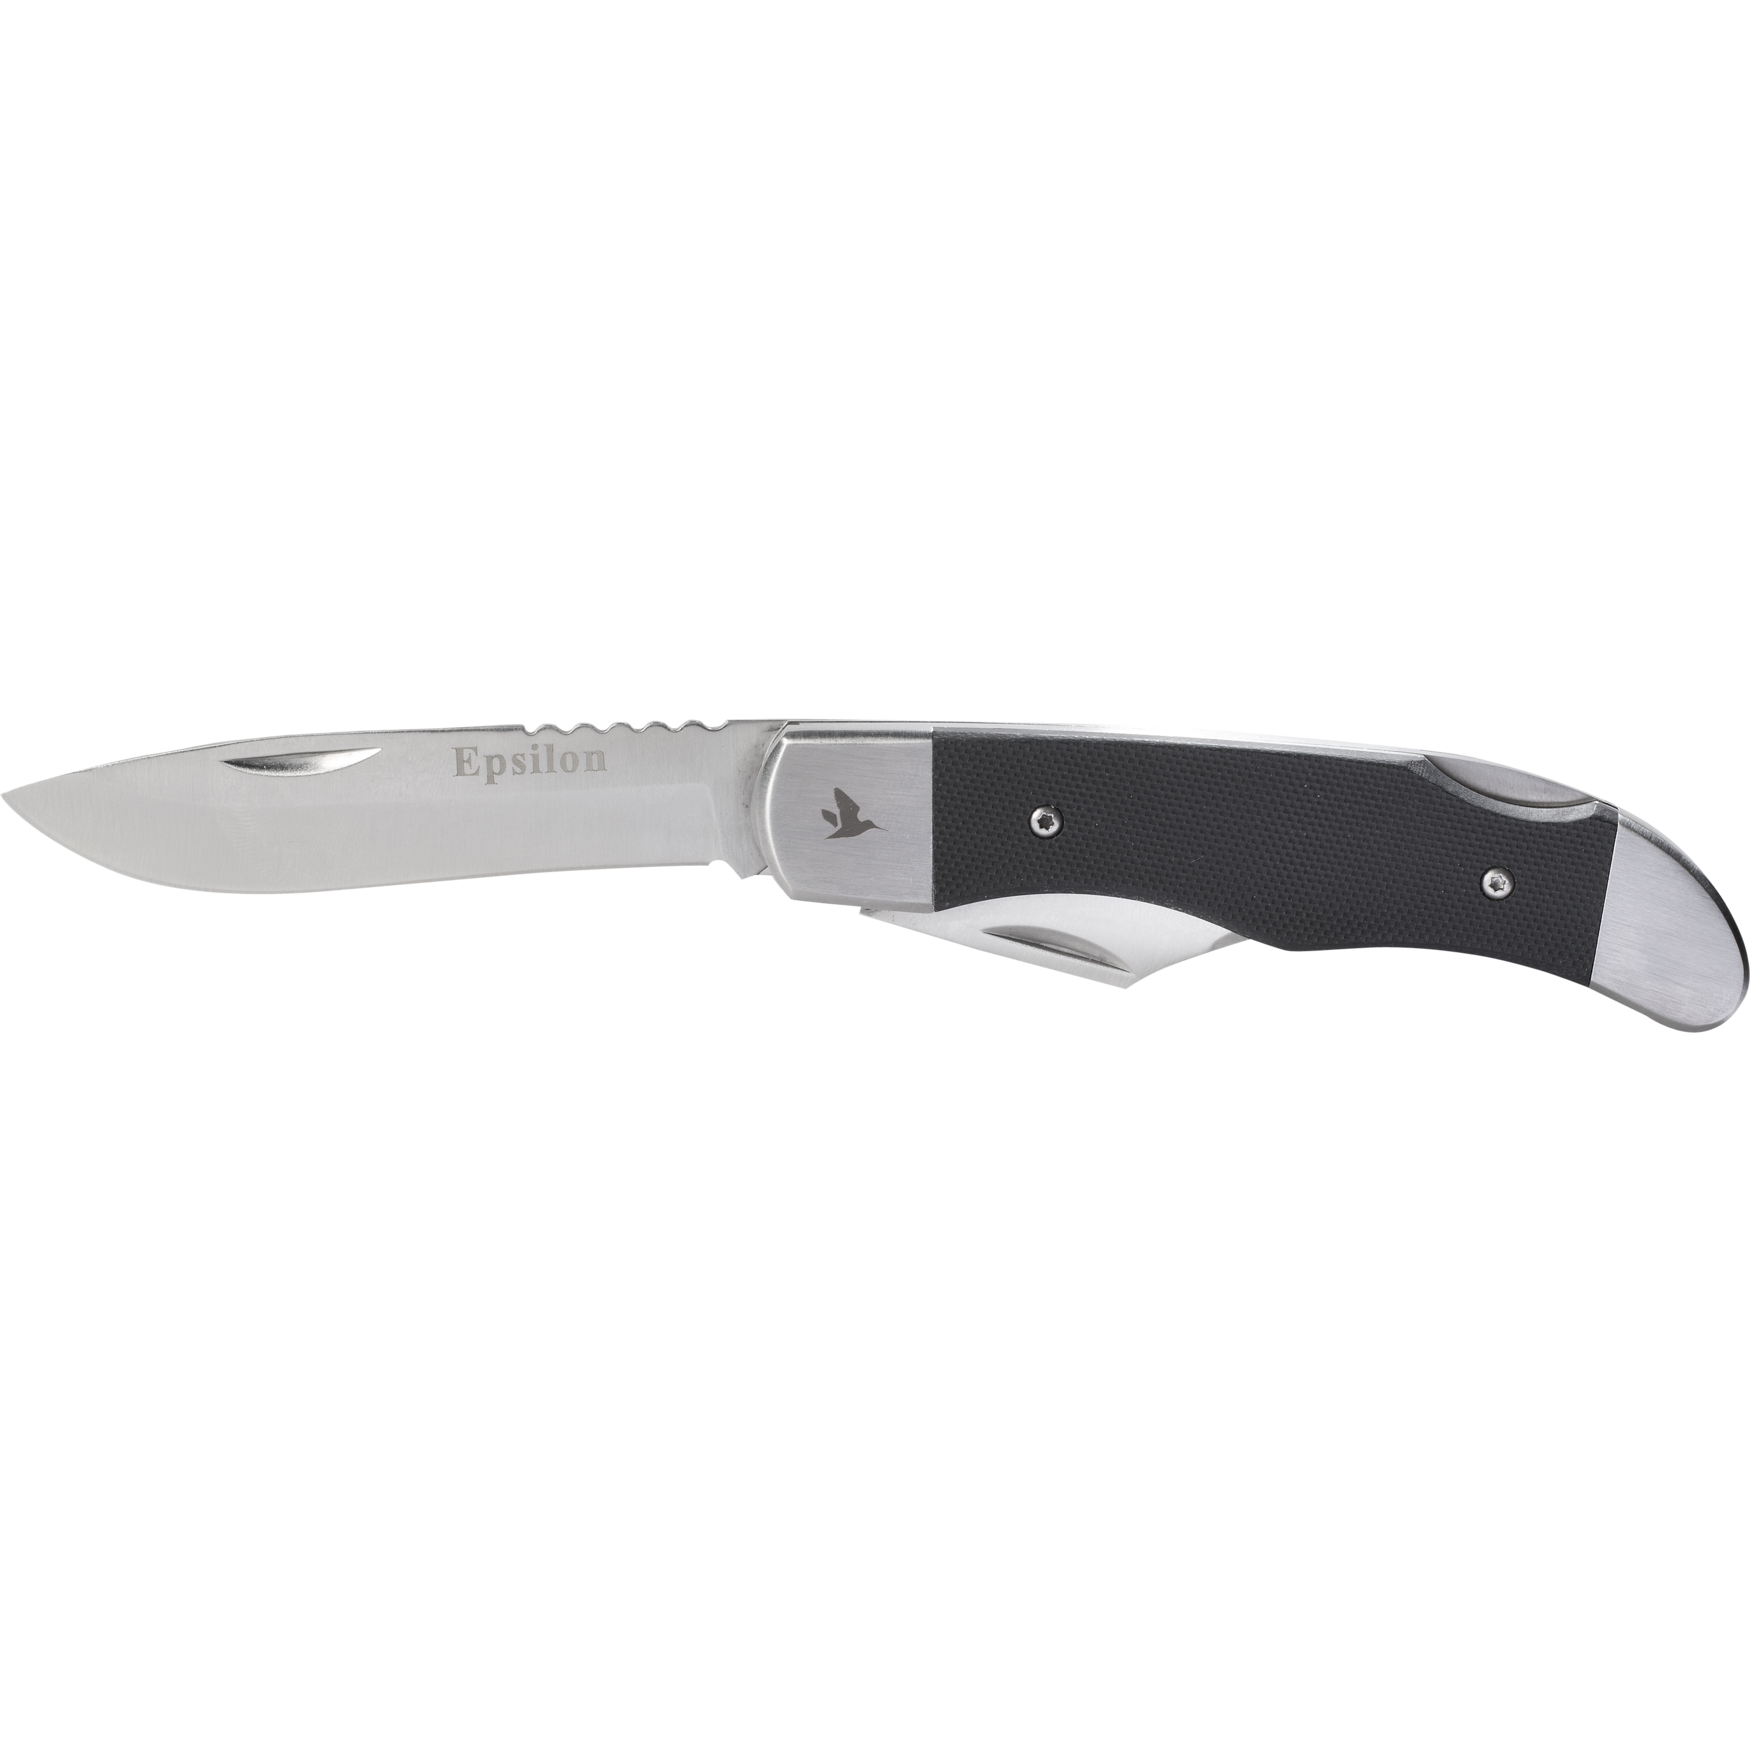 Epsilon lommekniv - 7,5 cm w/guth opener/saw thumbnail